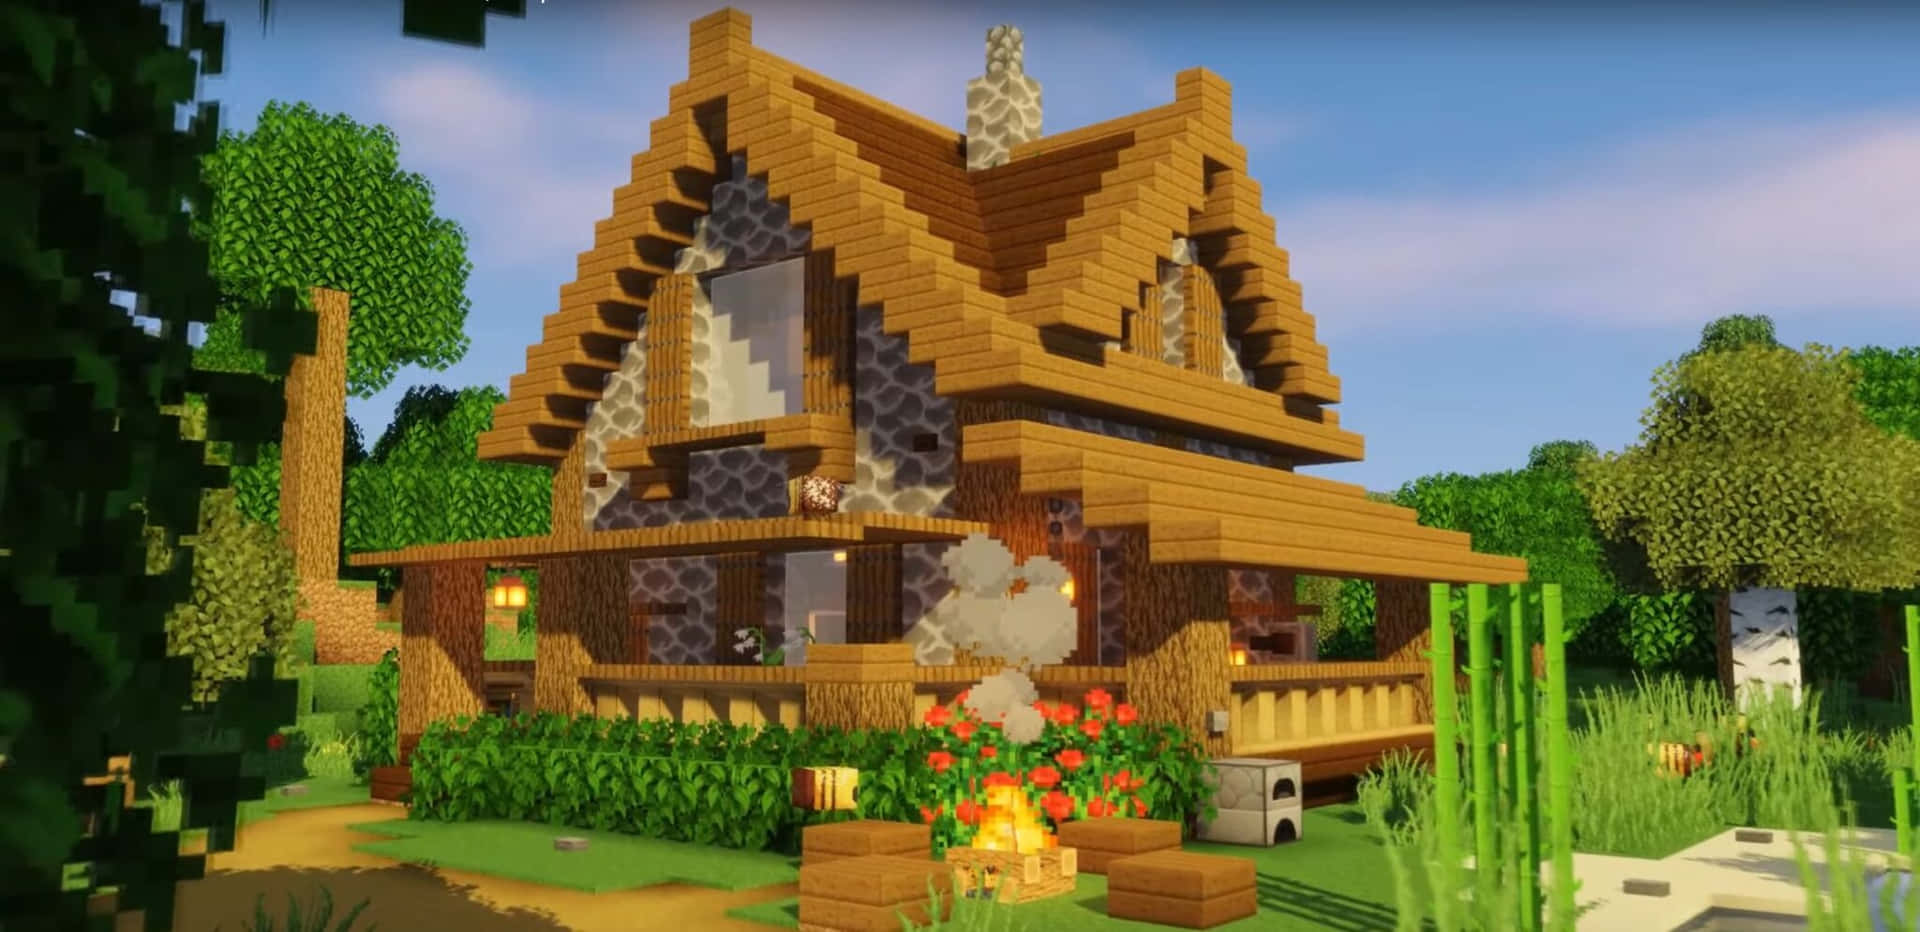 Enspektakulär Vy Över En By Med Traditionella Minecraft-hus.